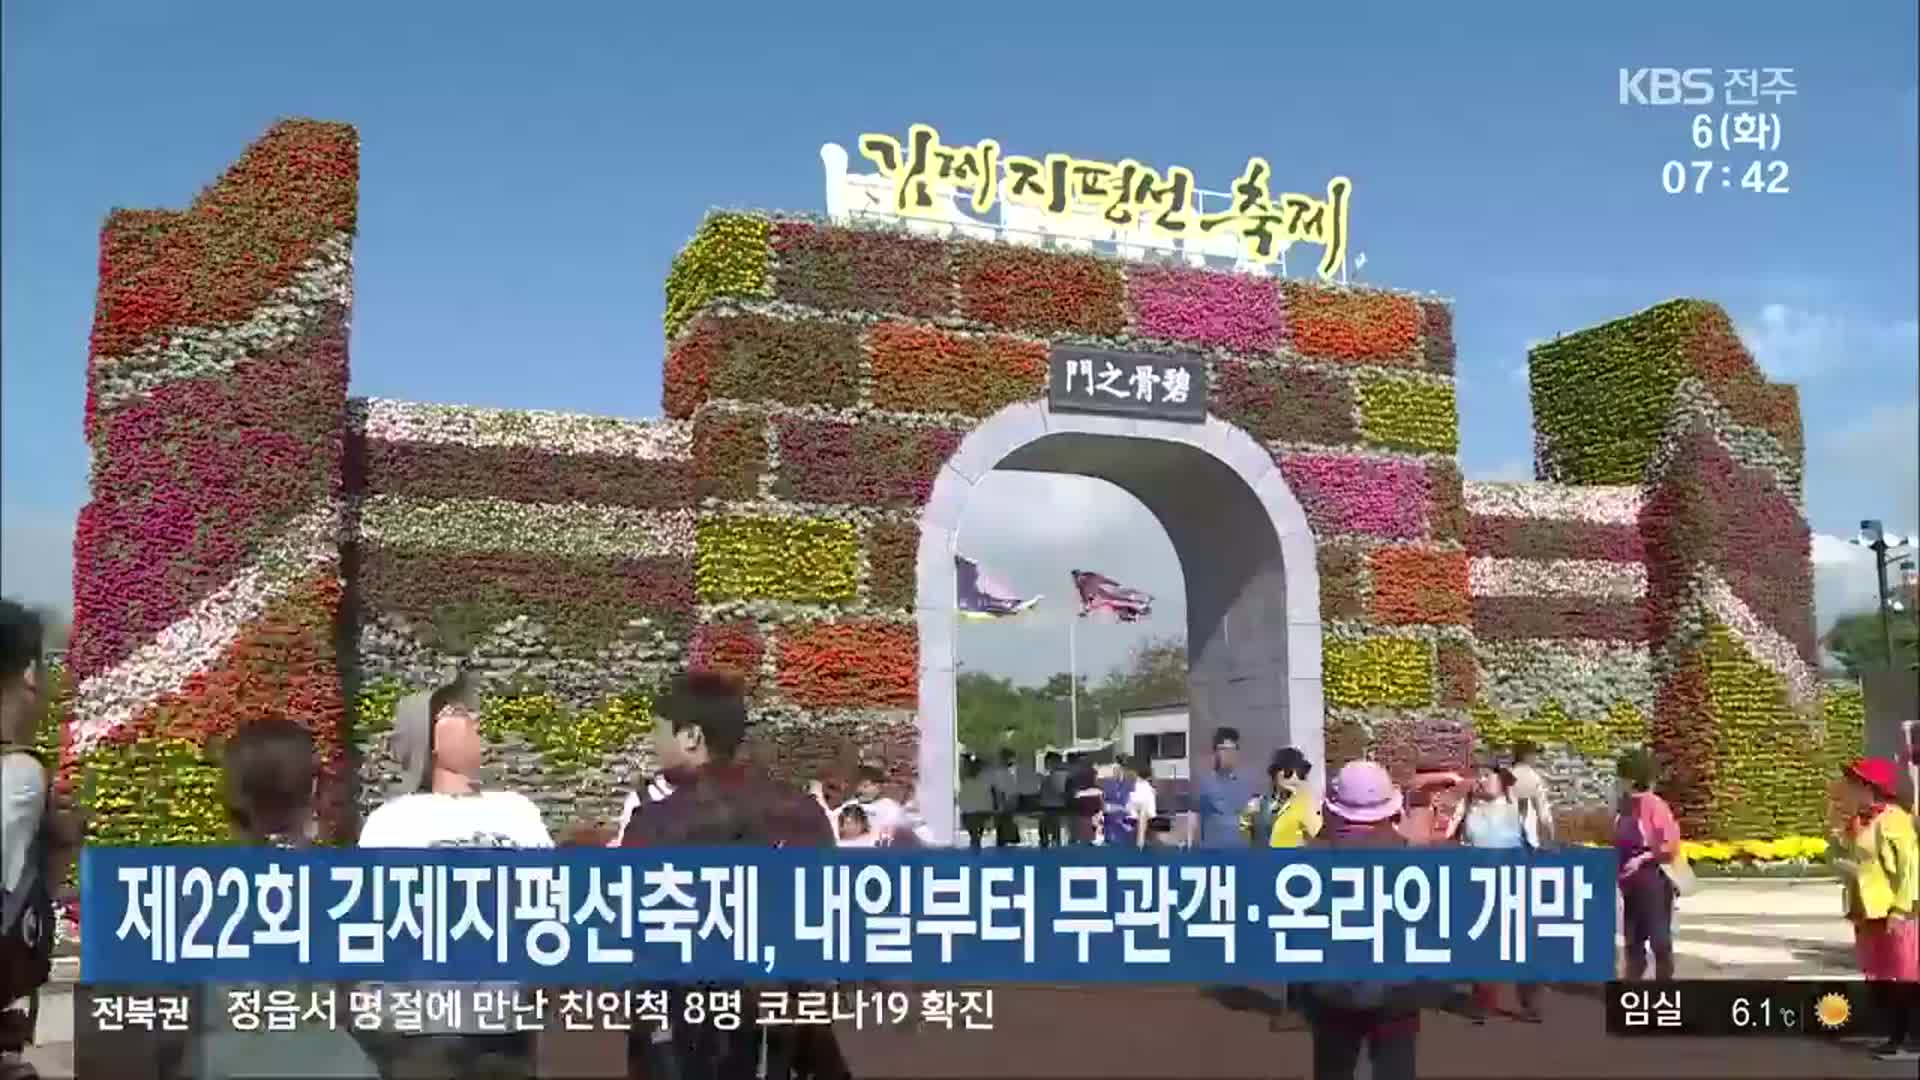 제22회 김제지평선축제, 내일부터 무관객·온라인 개막